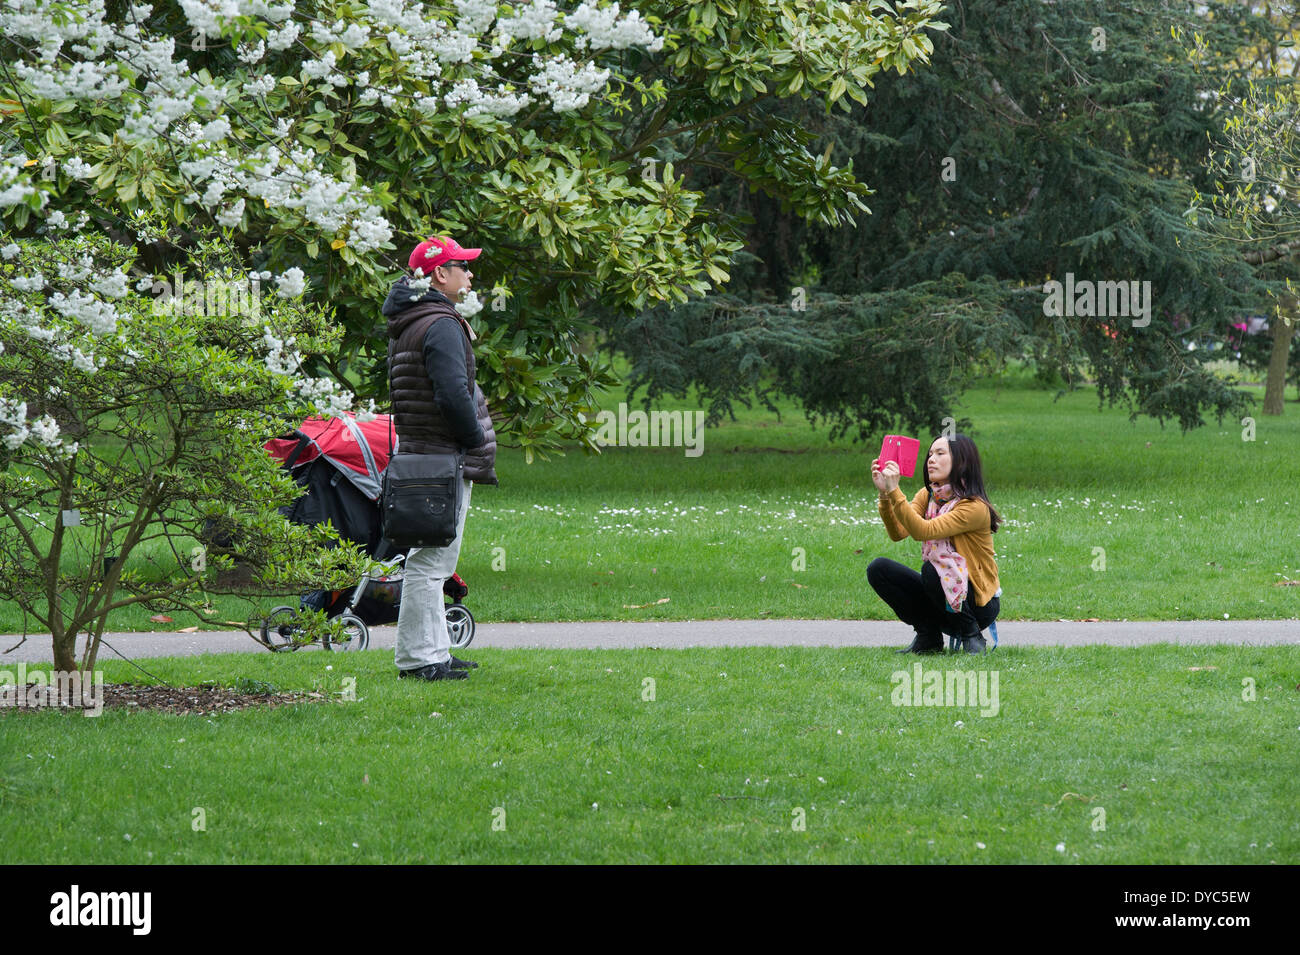 Asian turistica prendendo una foto su un telefono intelligente di una relativa contro cherry tree blossom. I Giardini di Kew. Londra, Inghilterra Foto Stock